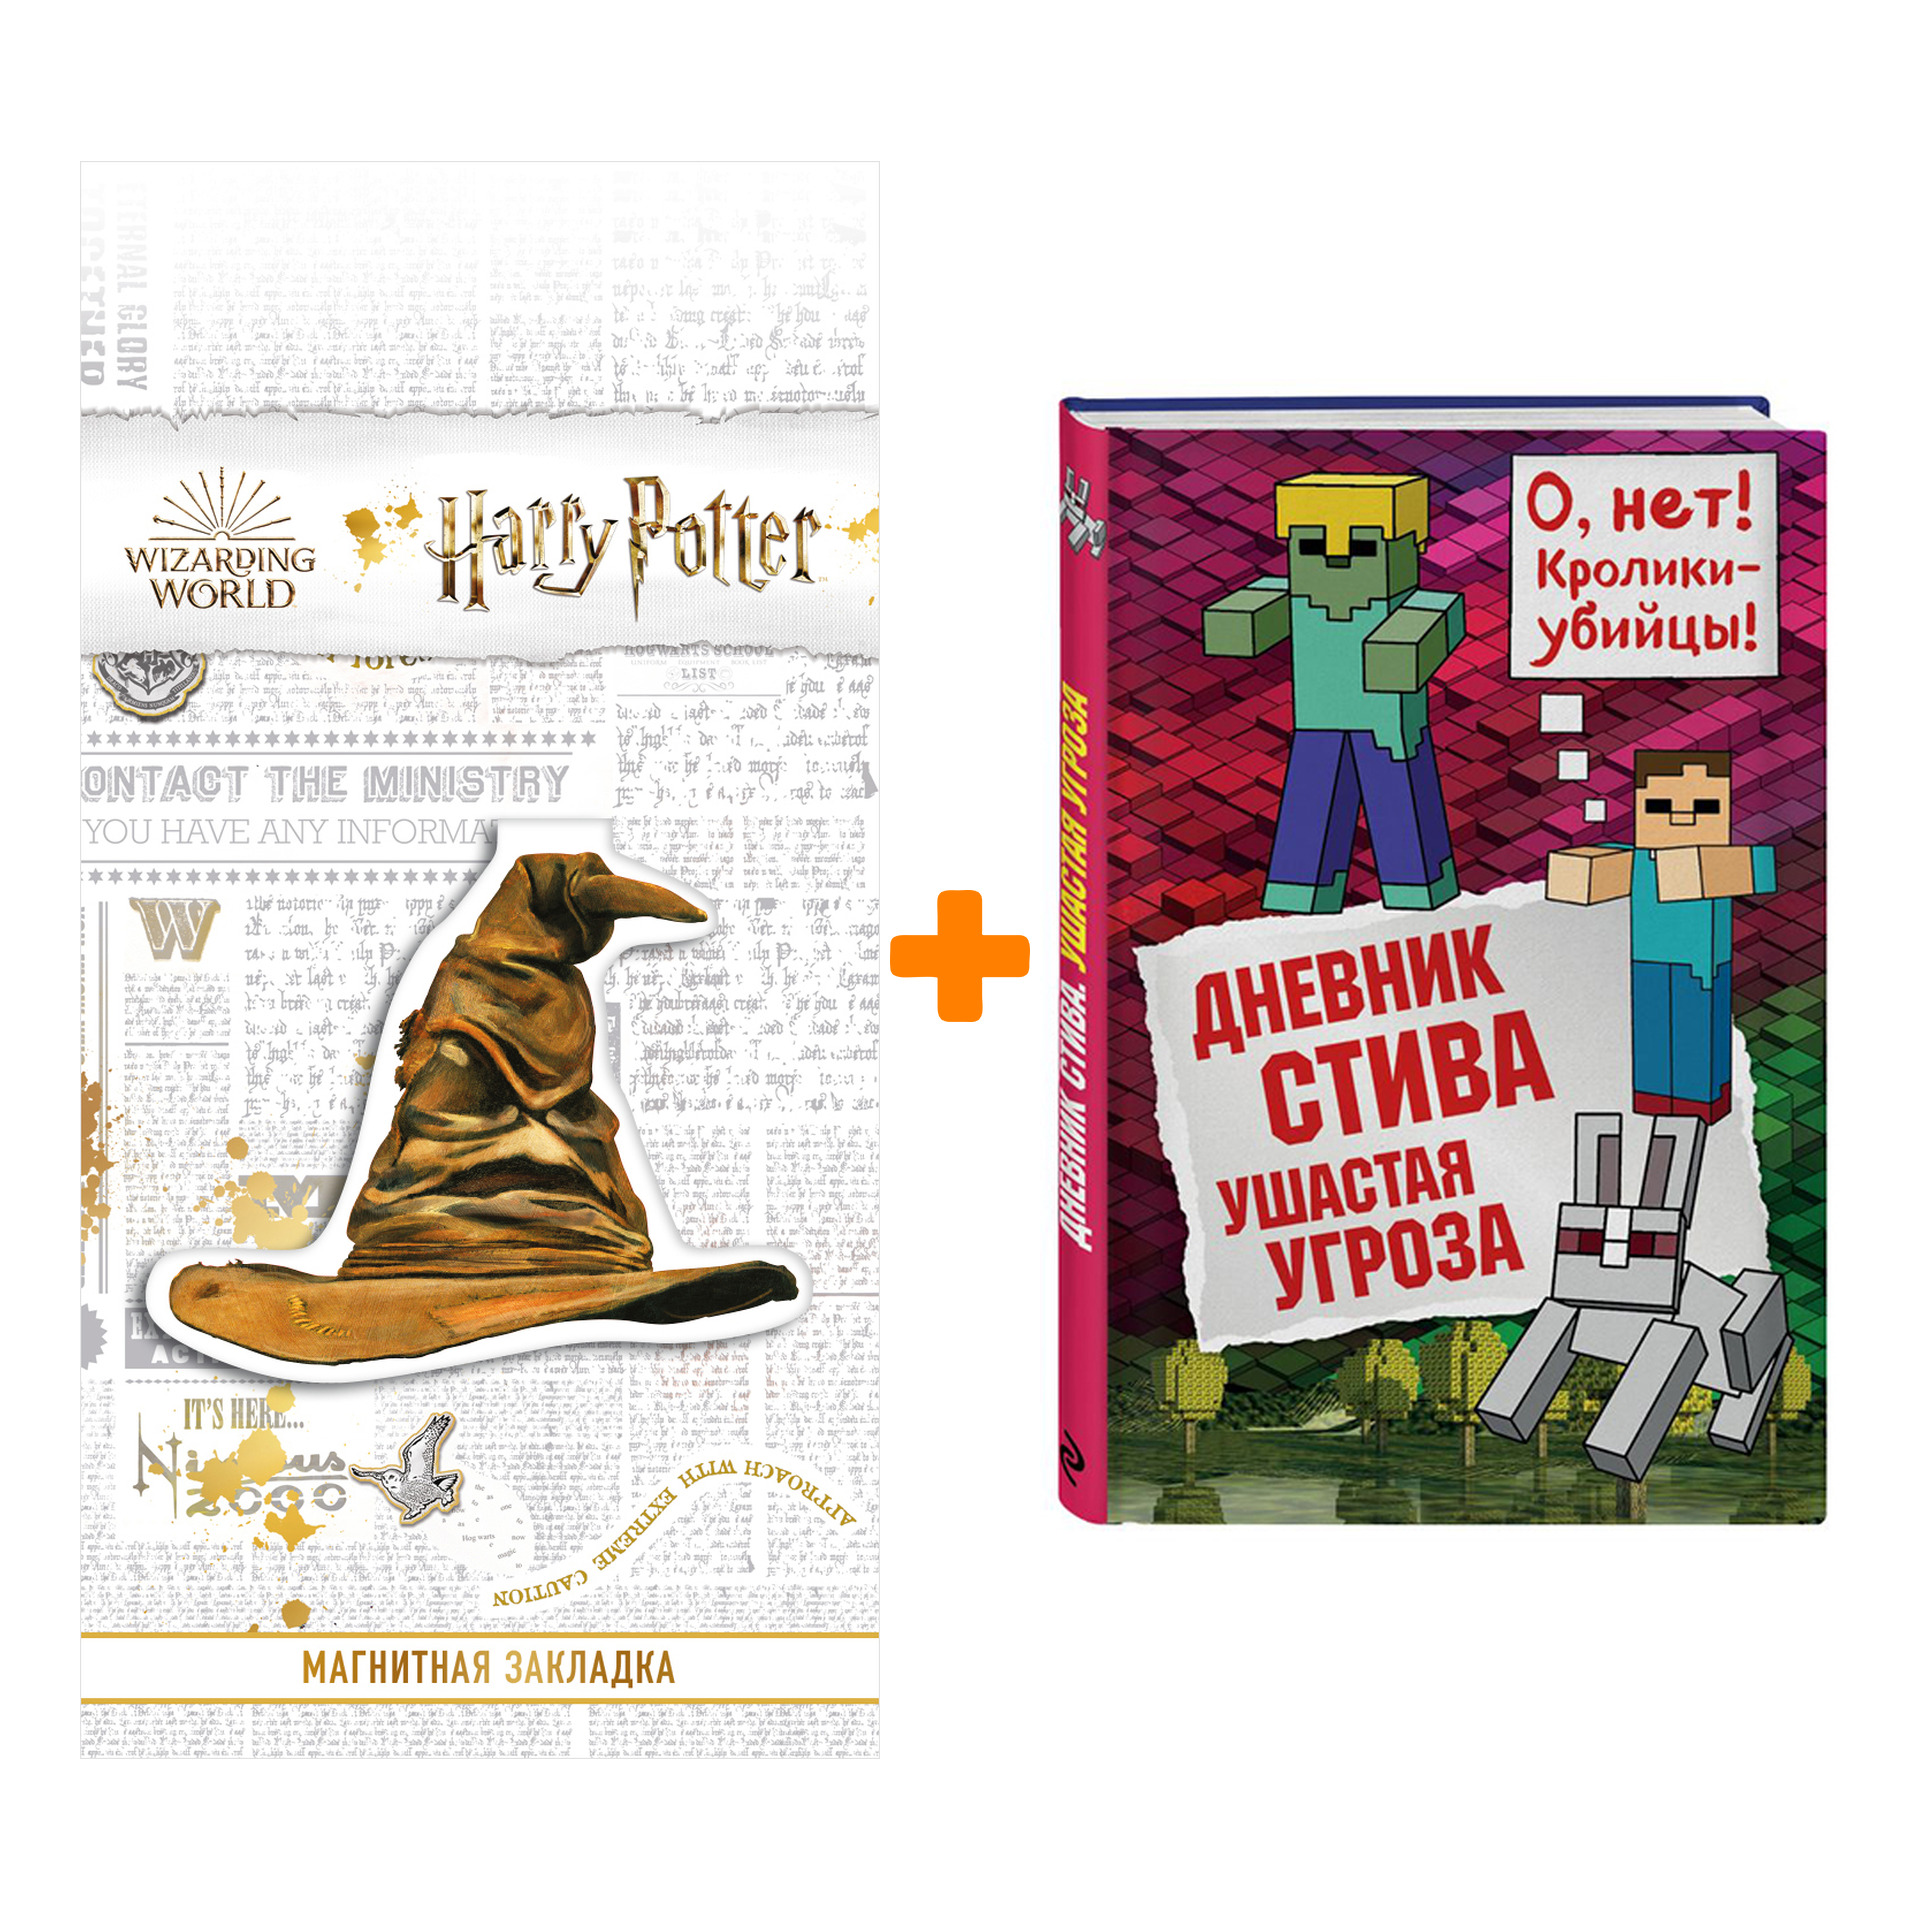 Набор Дневник Стива Книга 5 Ушастая угроза + Закладка Harry Potter Распределяющая шляпа магнитная